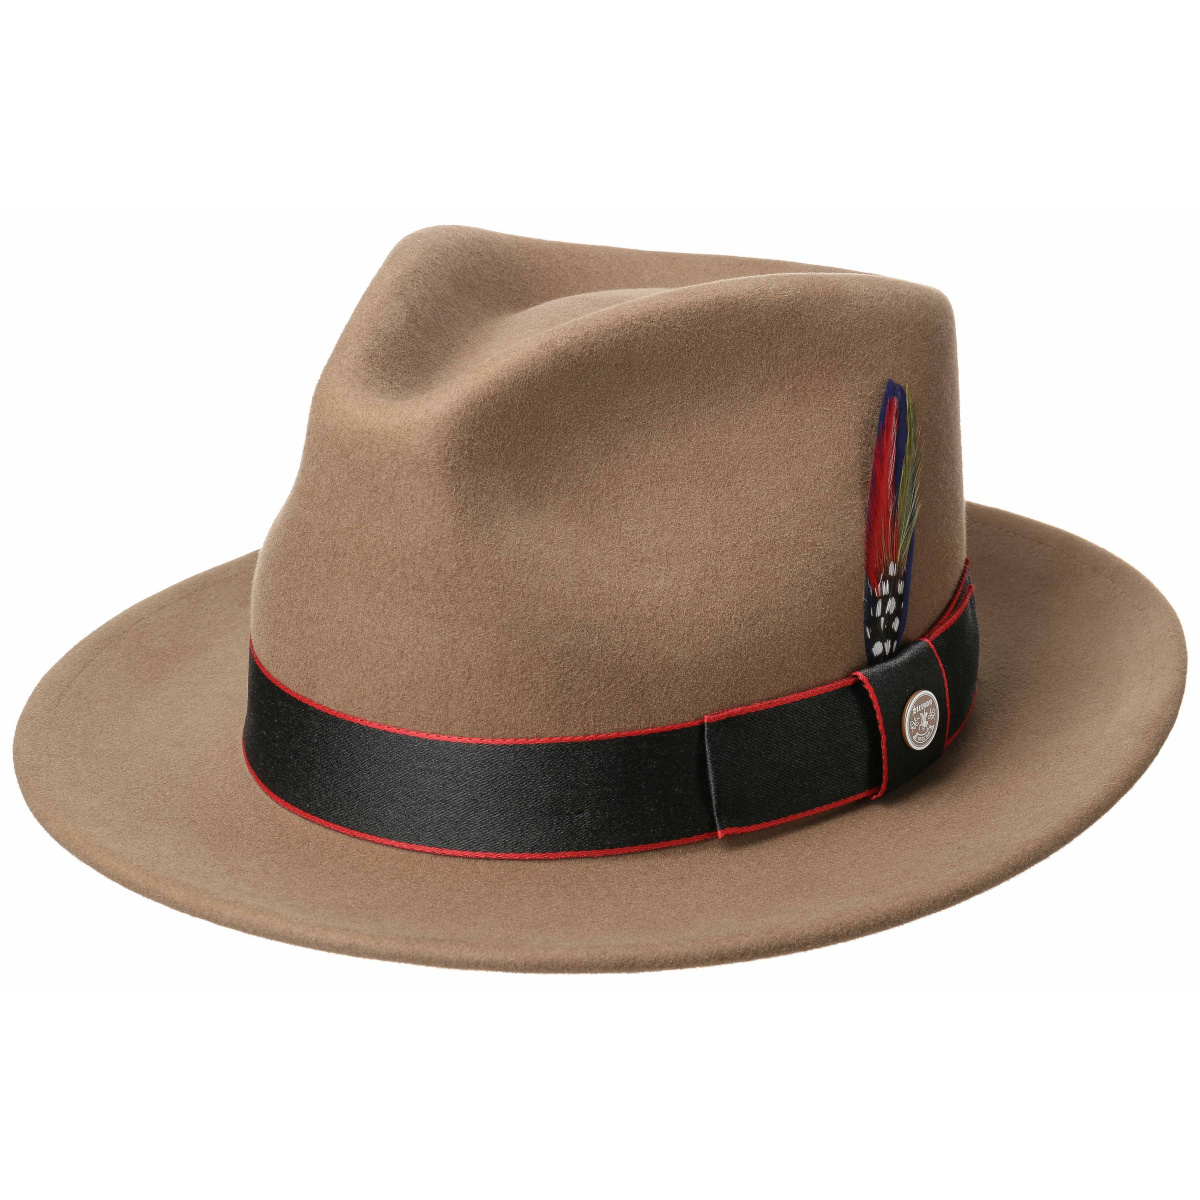 Fedora Cordele Wool & Cashmere Beige Stetson Hat